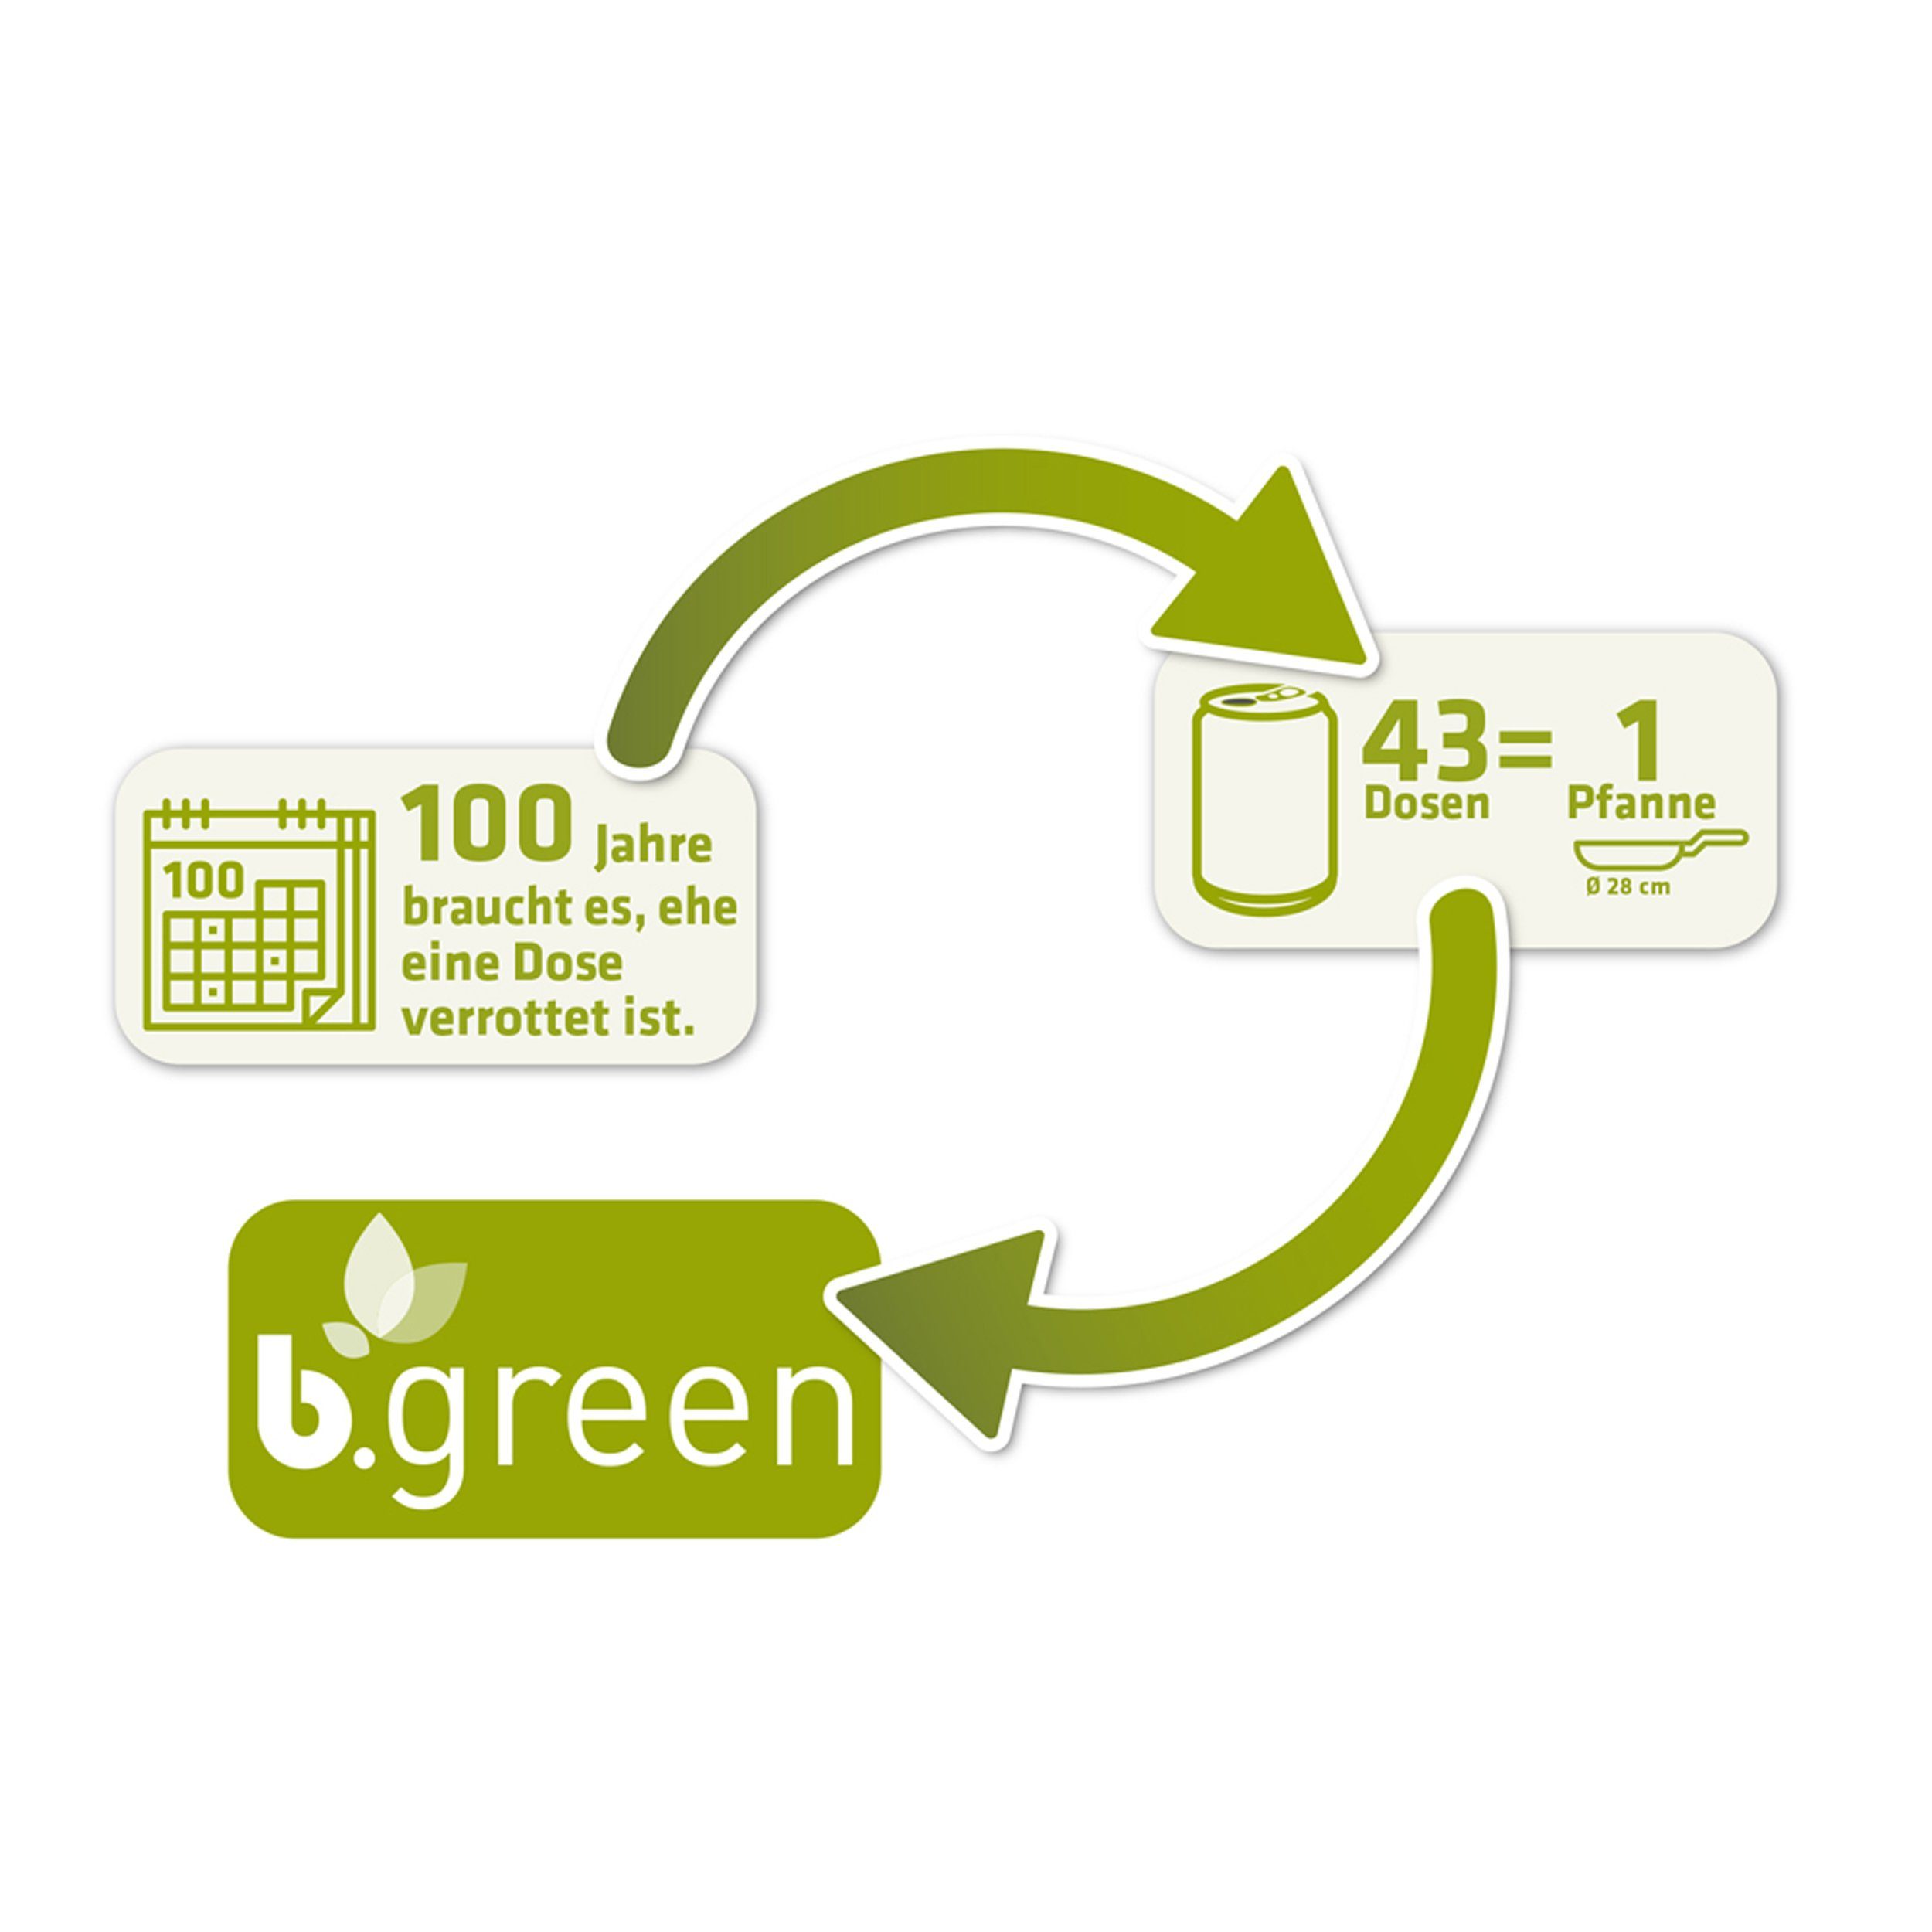 Aus Dosen Induktionsgeeignet, Servierpfanne % Pfanne b.green Berndes Bratpfanne cm recycelten 20 100 Aluminium,